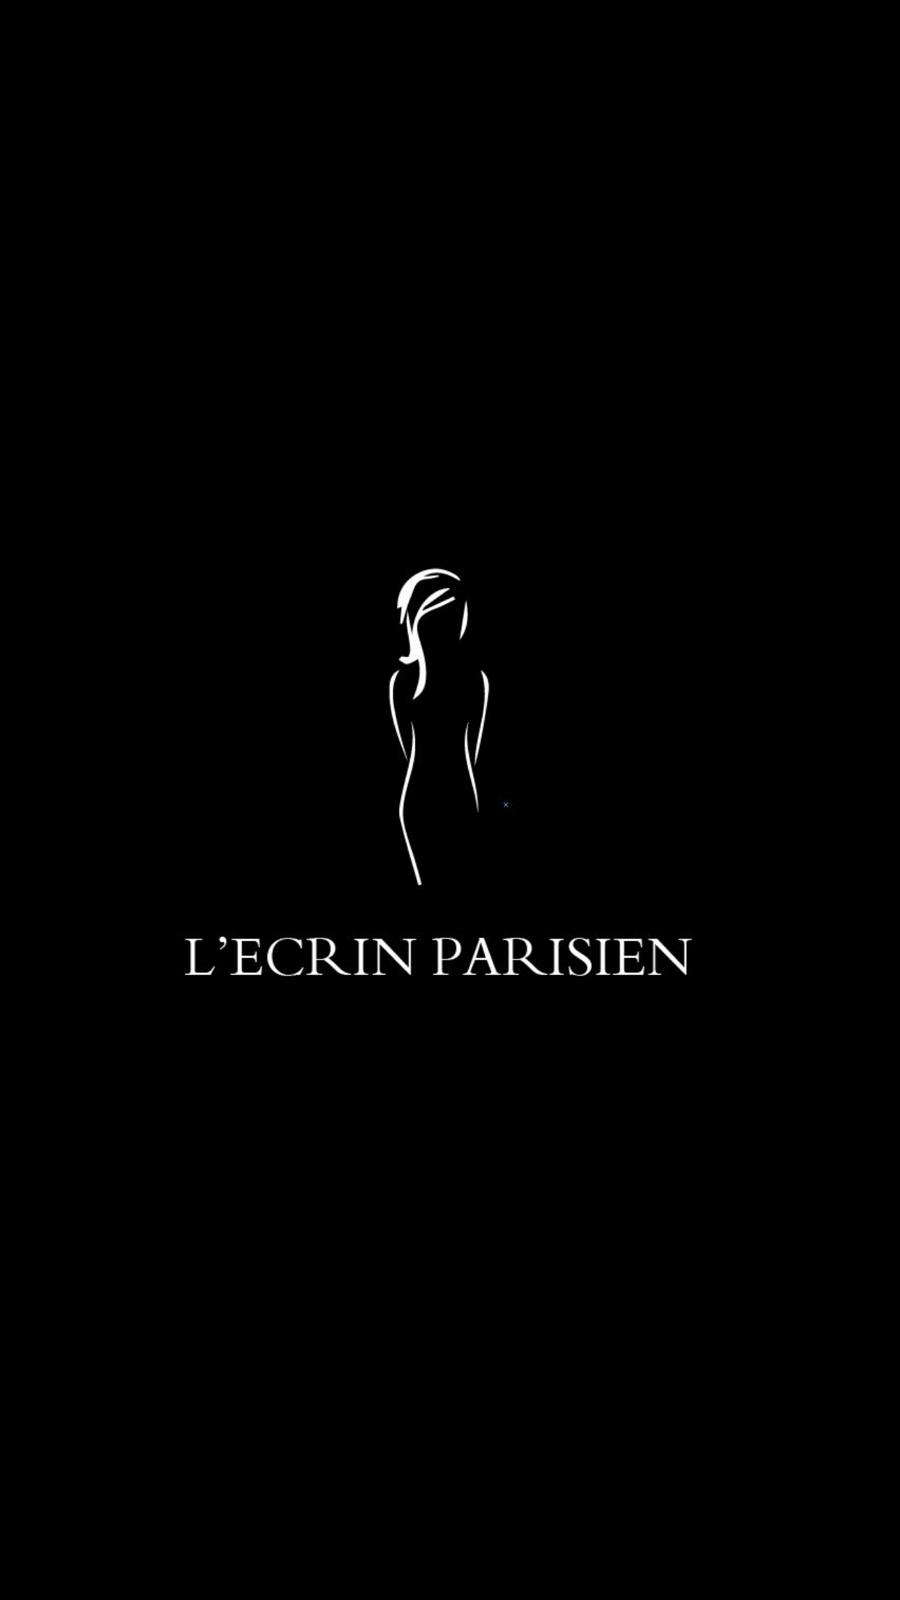 Création graphique pour L'Ecrin Parisien